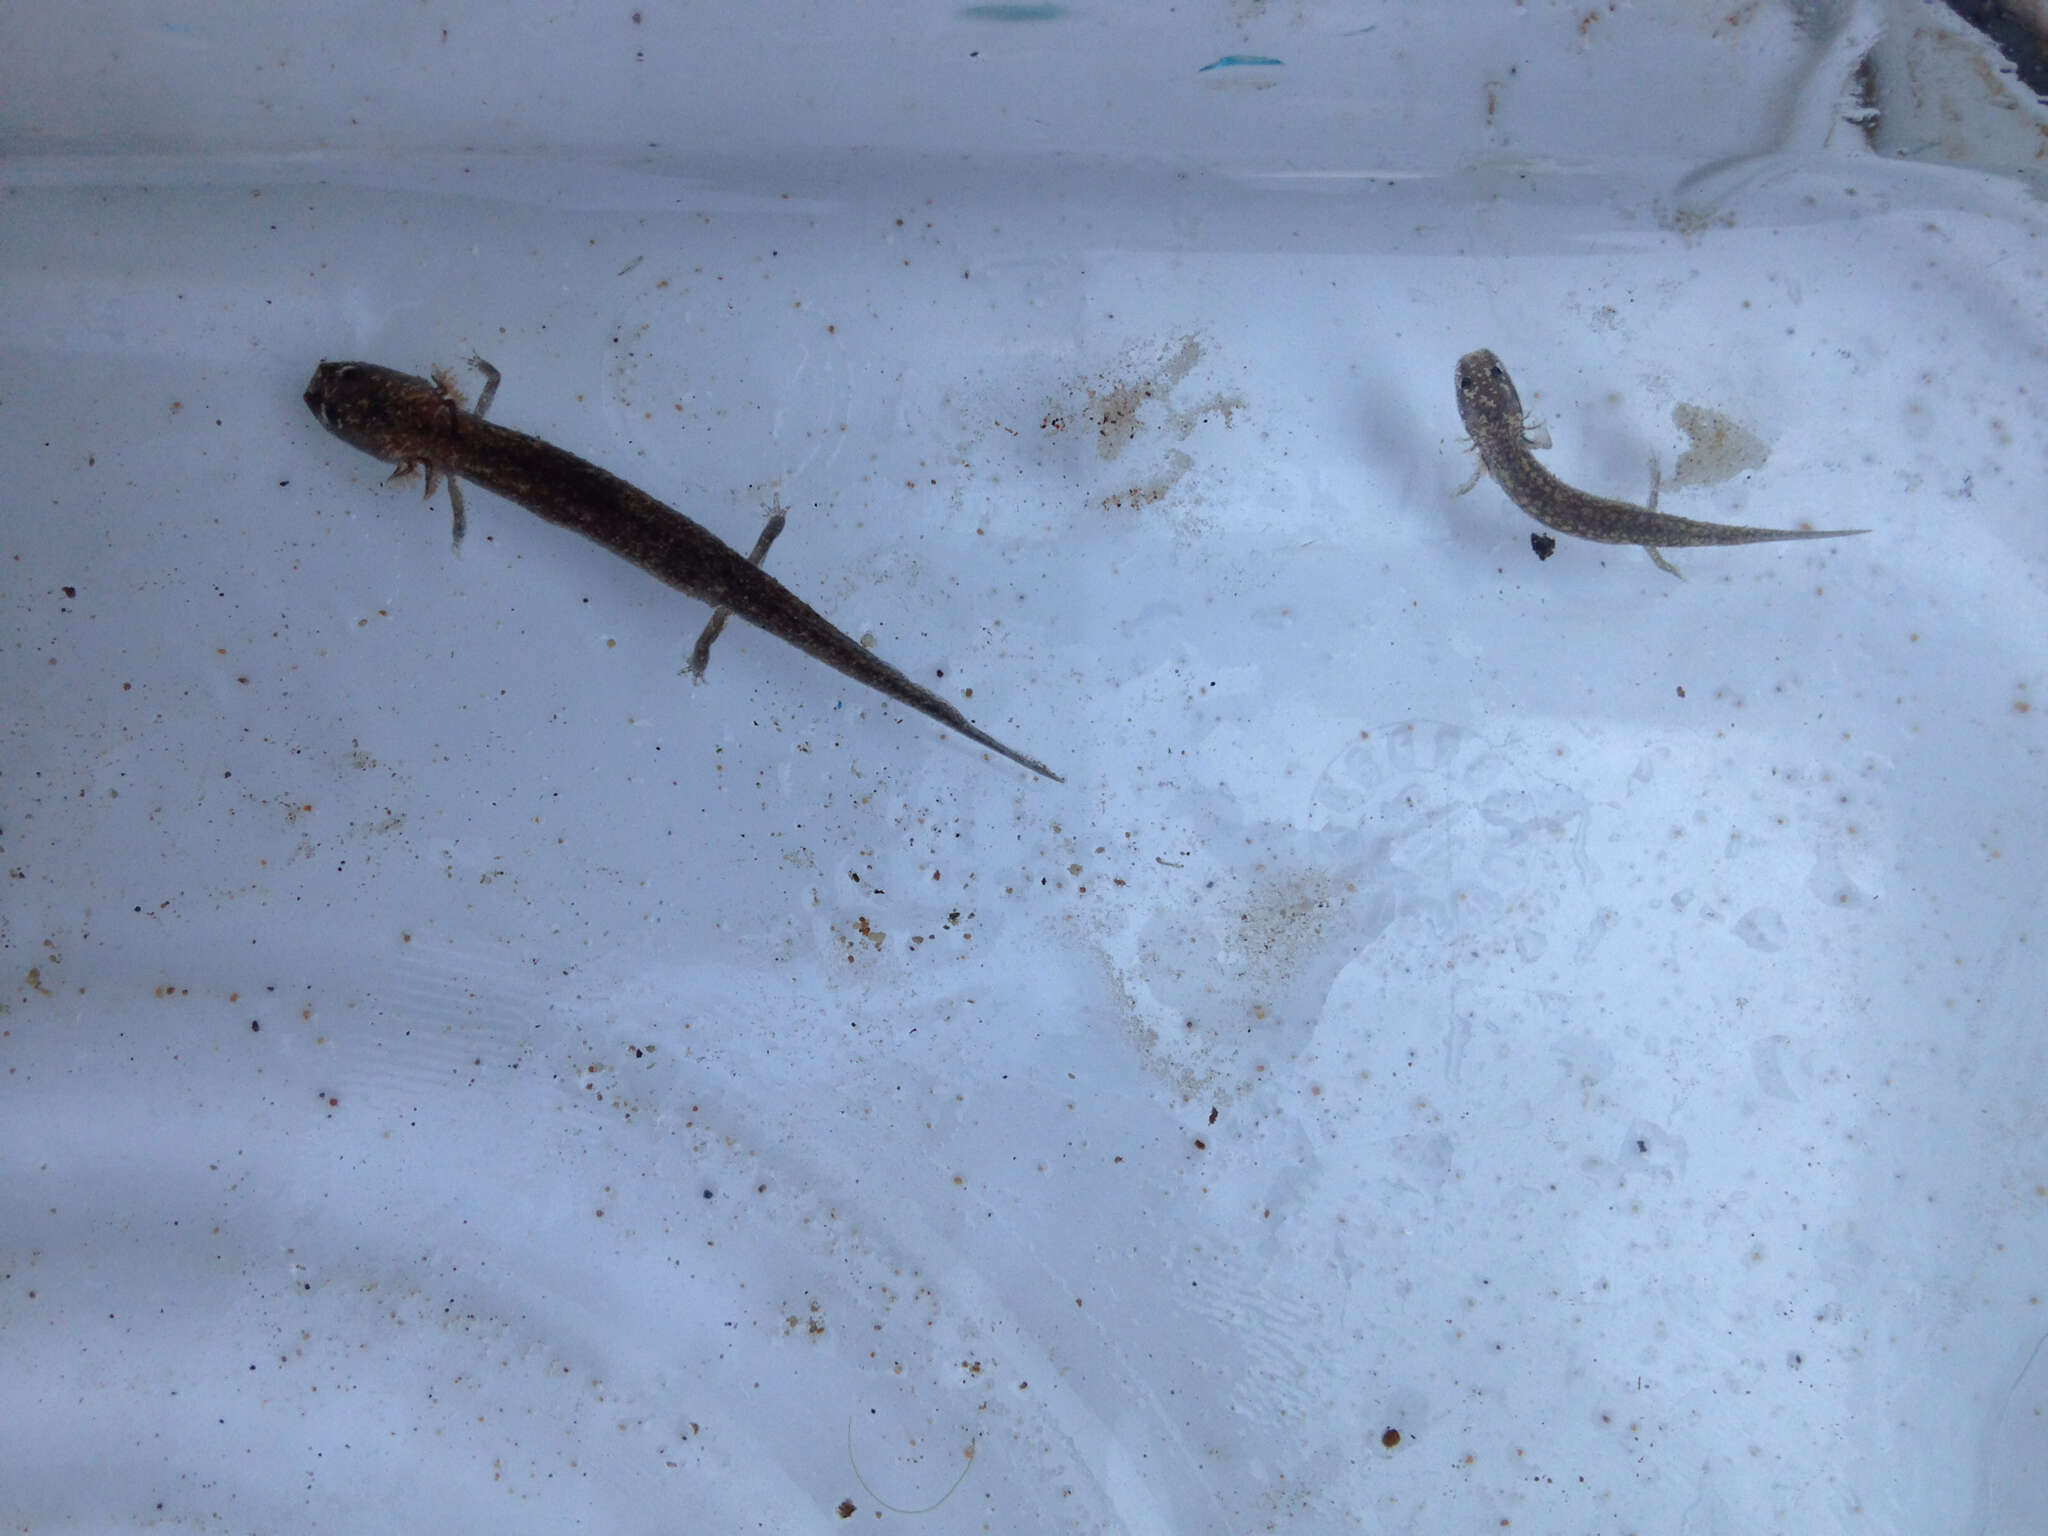 Image of Barton Springs Salamander